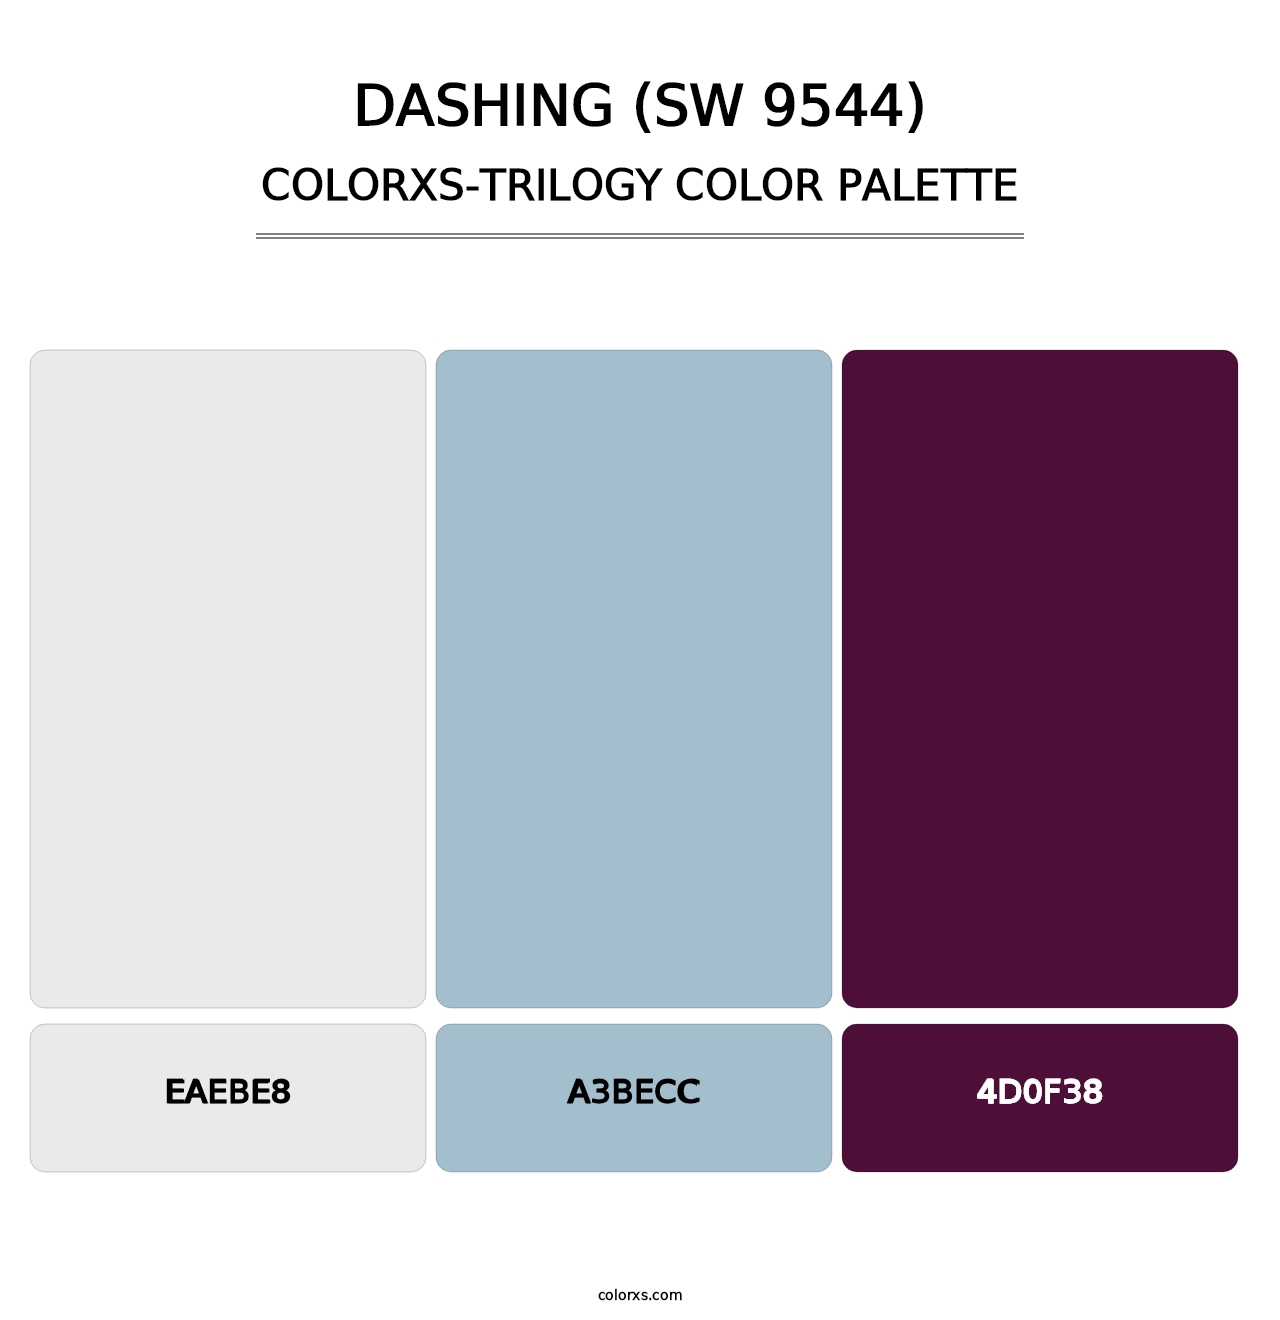 Dashing (SW 9544) - Colorxs Trilogy Palette